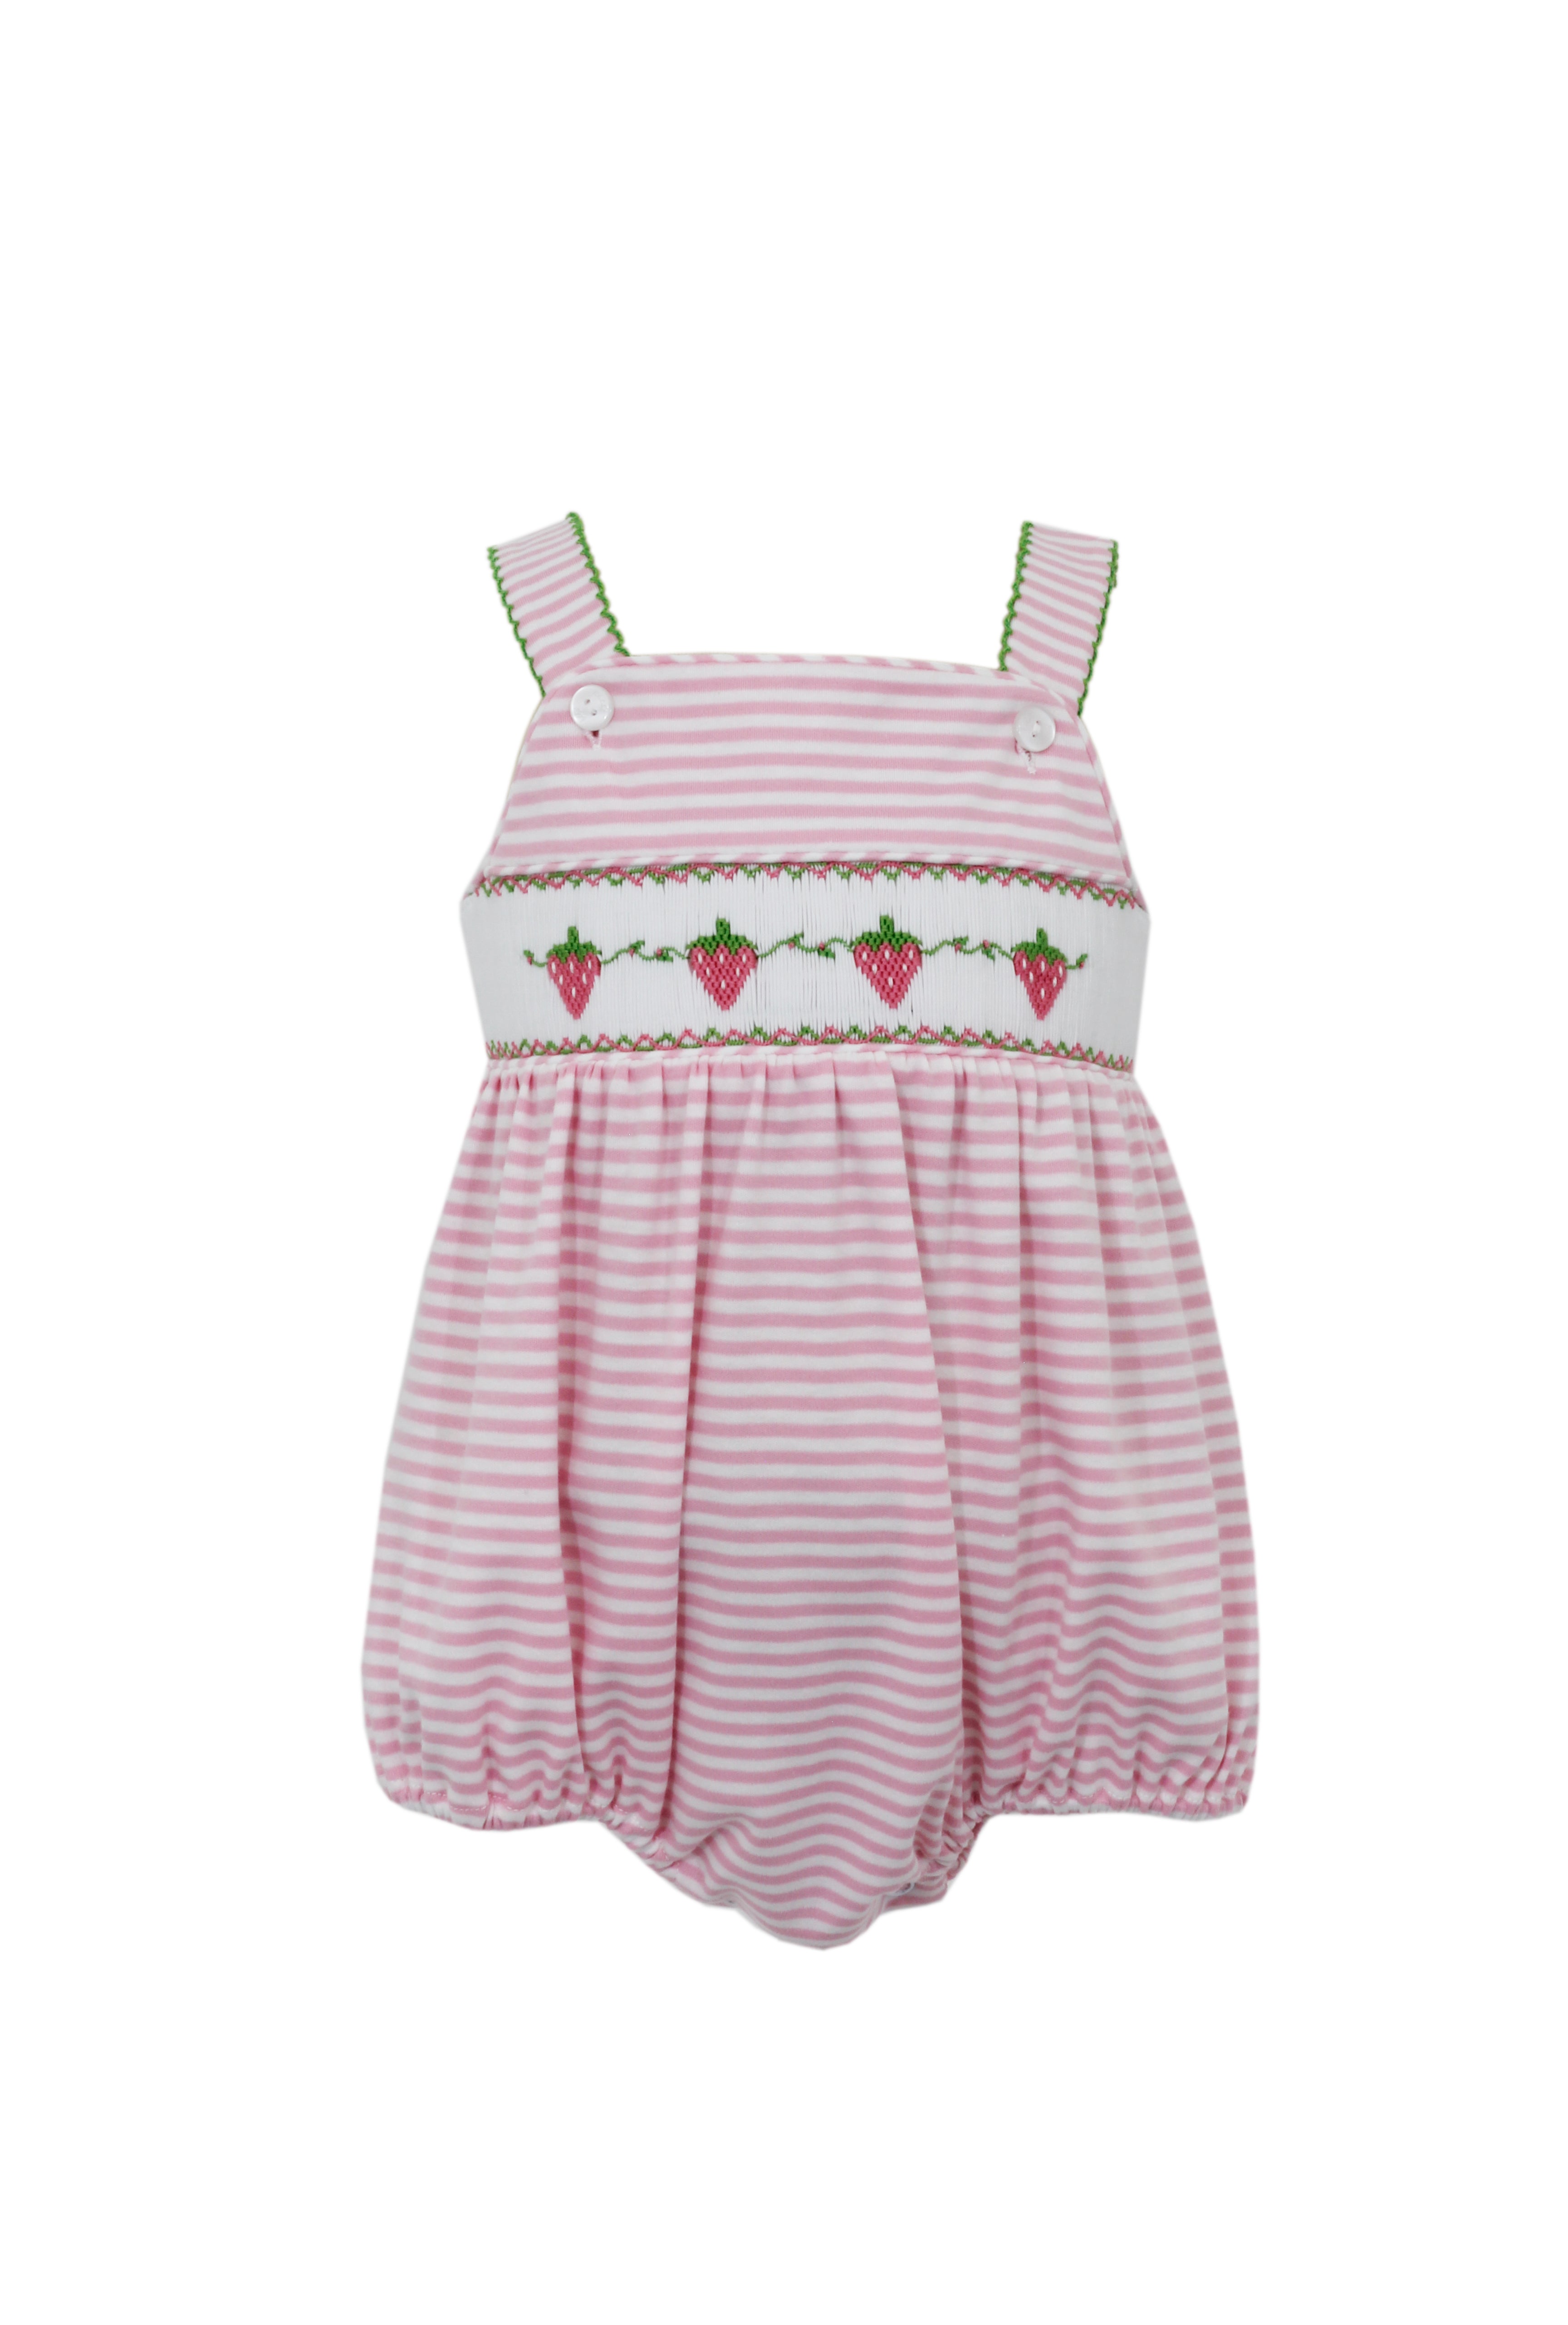 Pink Stripe Knit Strawberry Smocked Sunbubble